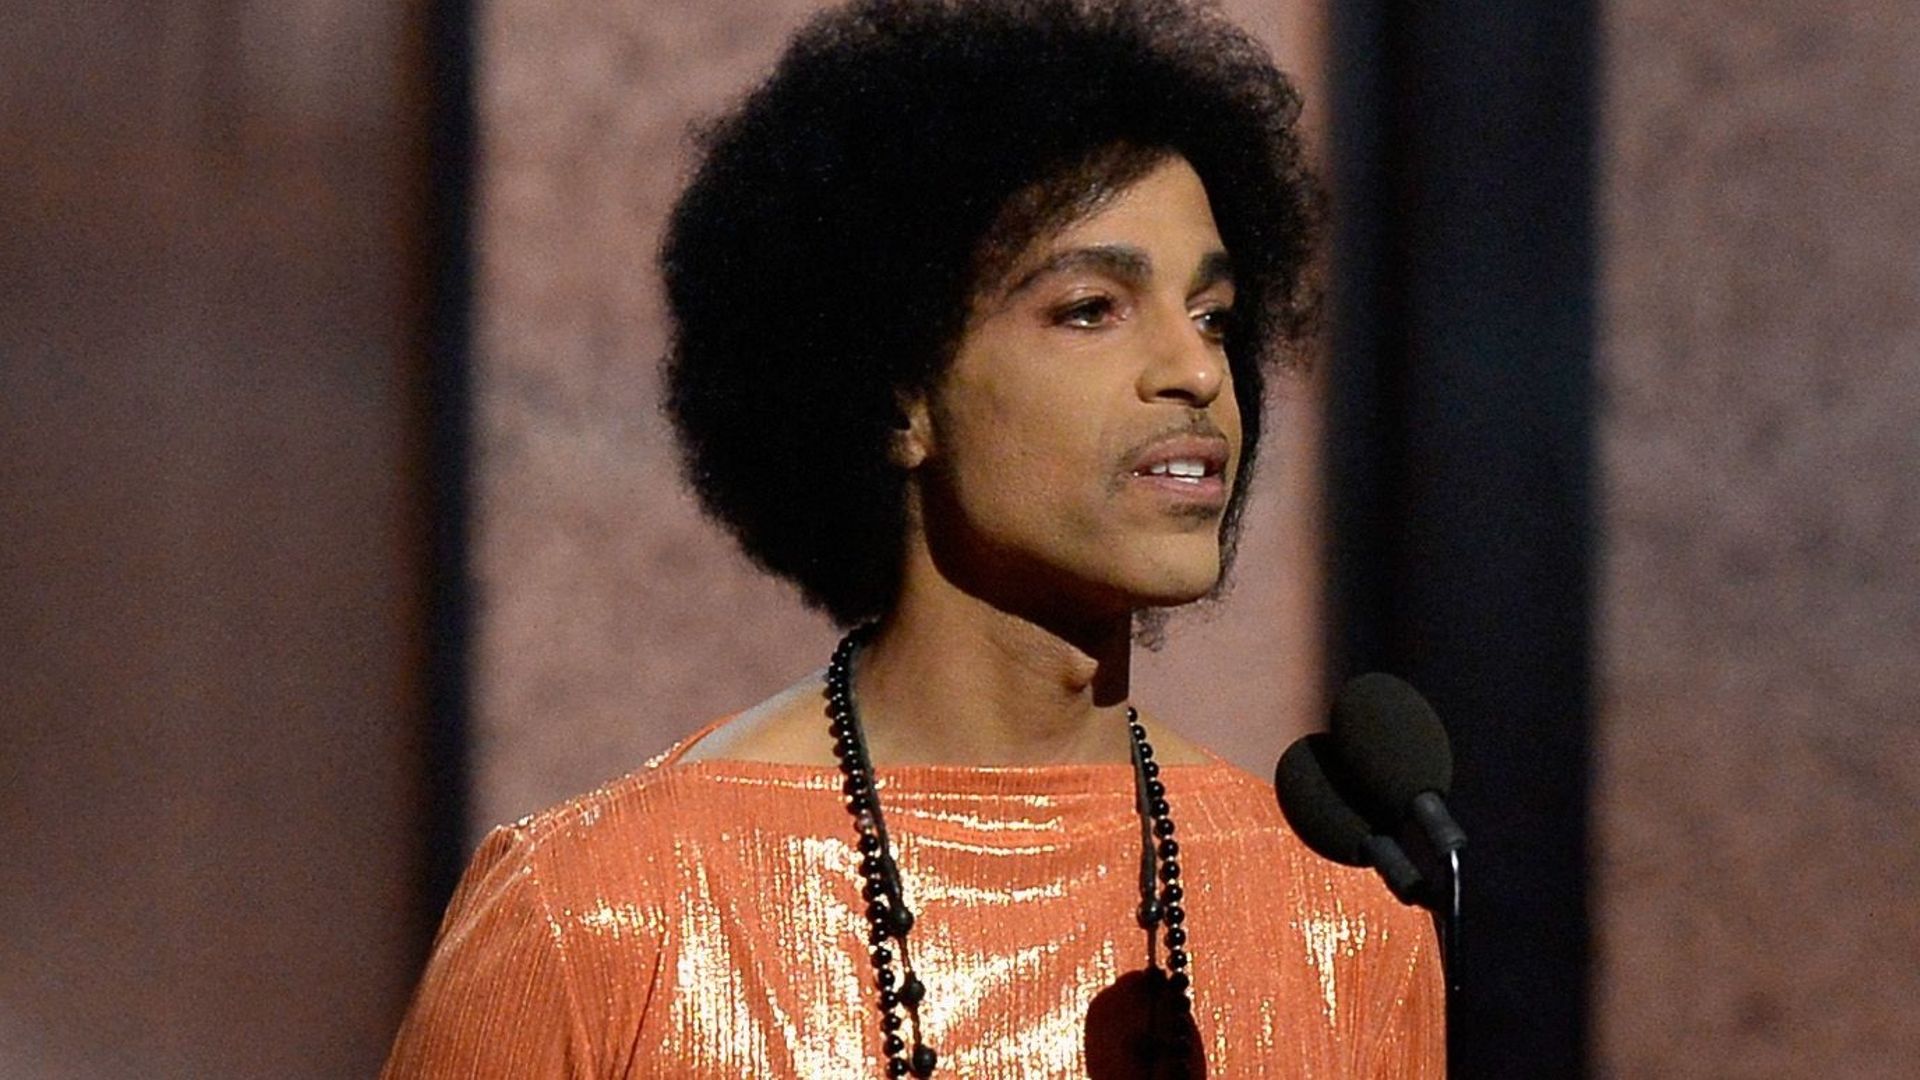 Prince lors de la soirée de remise des Grammy Awards, en février 2015